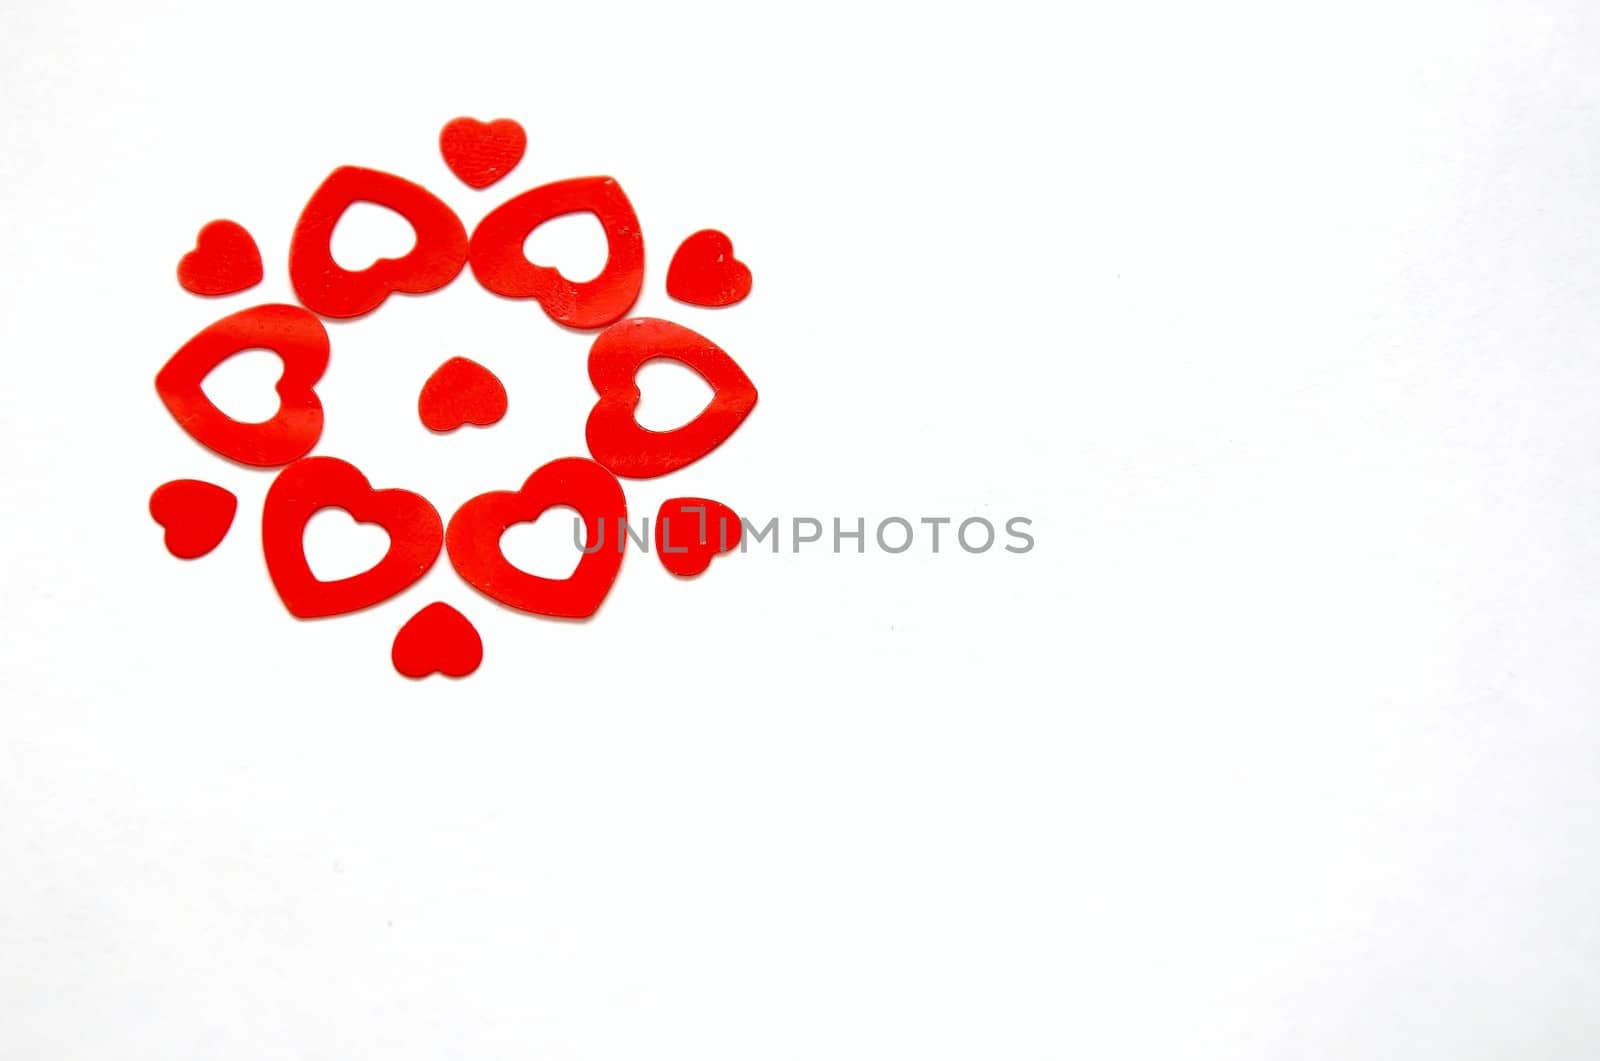 Red Hearts Flower by lisebennett